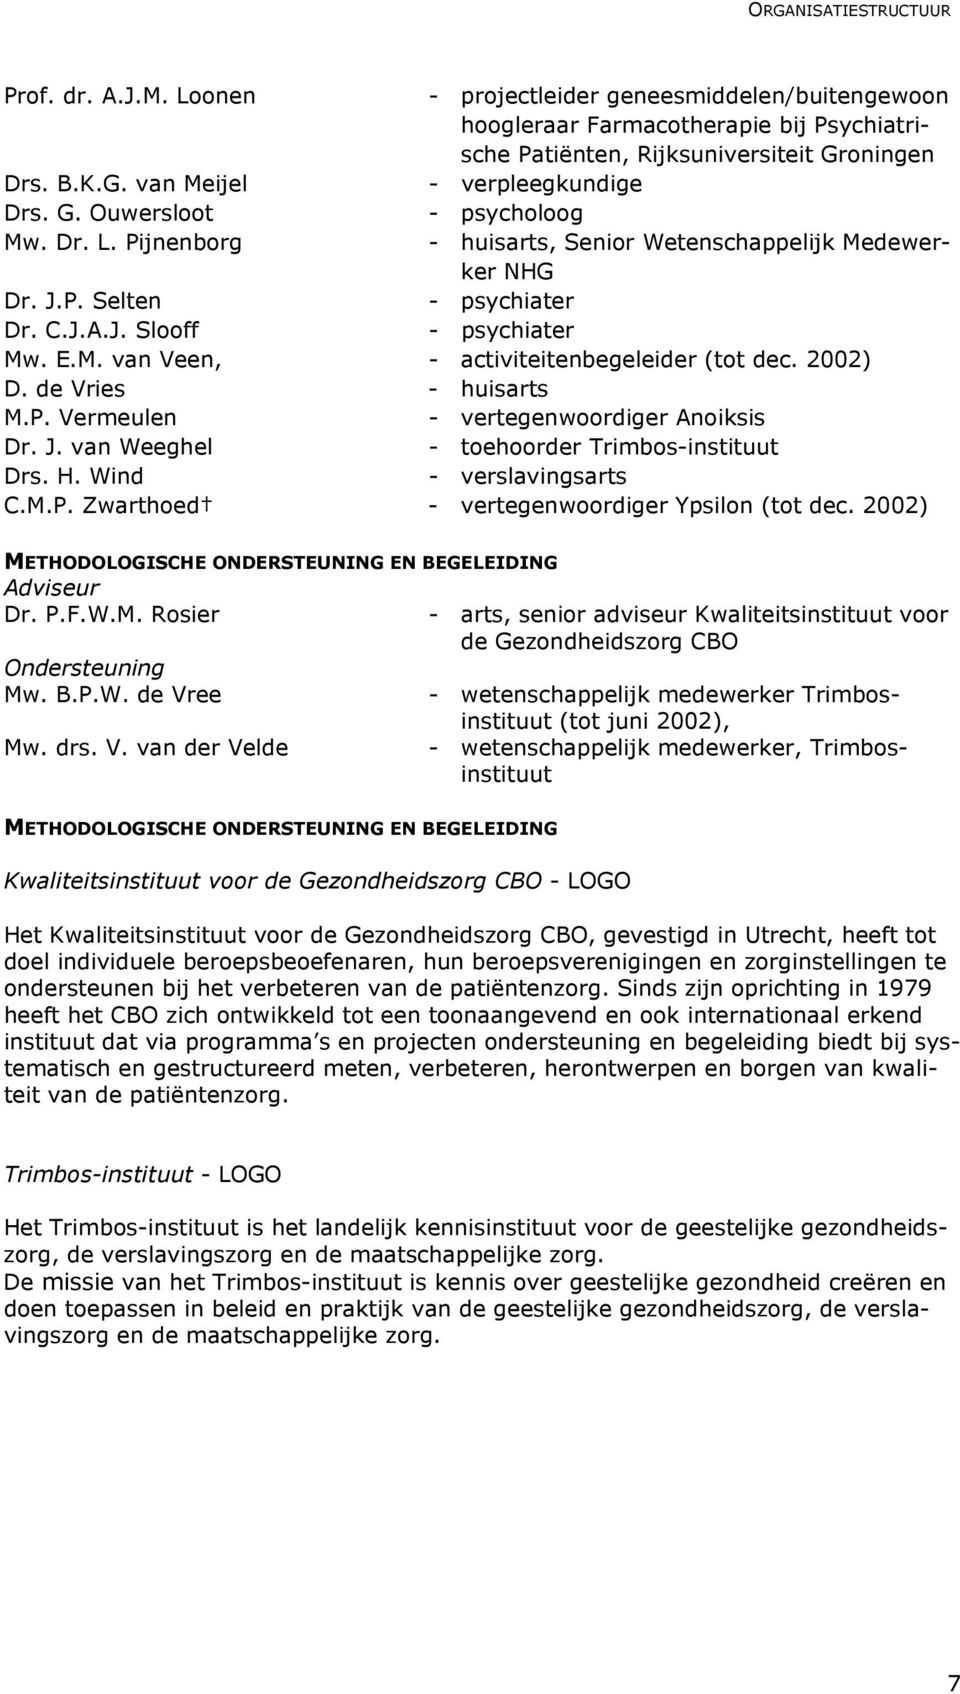 2002) D. de Vries - huisarts M.P. Vermeulen - vertegenwoordiger Anoiksis Dr. J. van Weeghel - toehoorder Trimbos-instituut Drs. H. Wind - verslavingsarts C.M.P. Zwarthoed - vertegenwoordiger Ypsilon (tot dec.